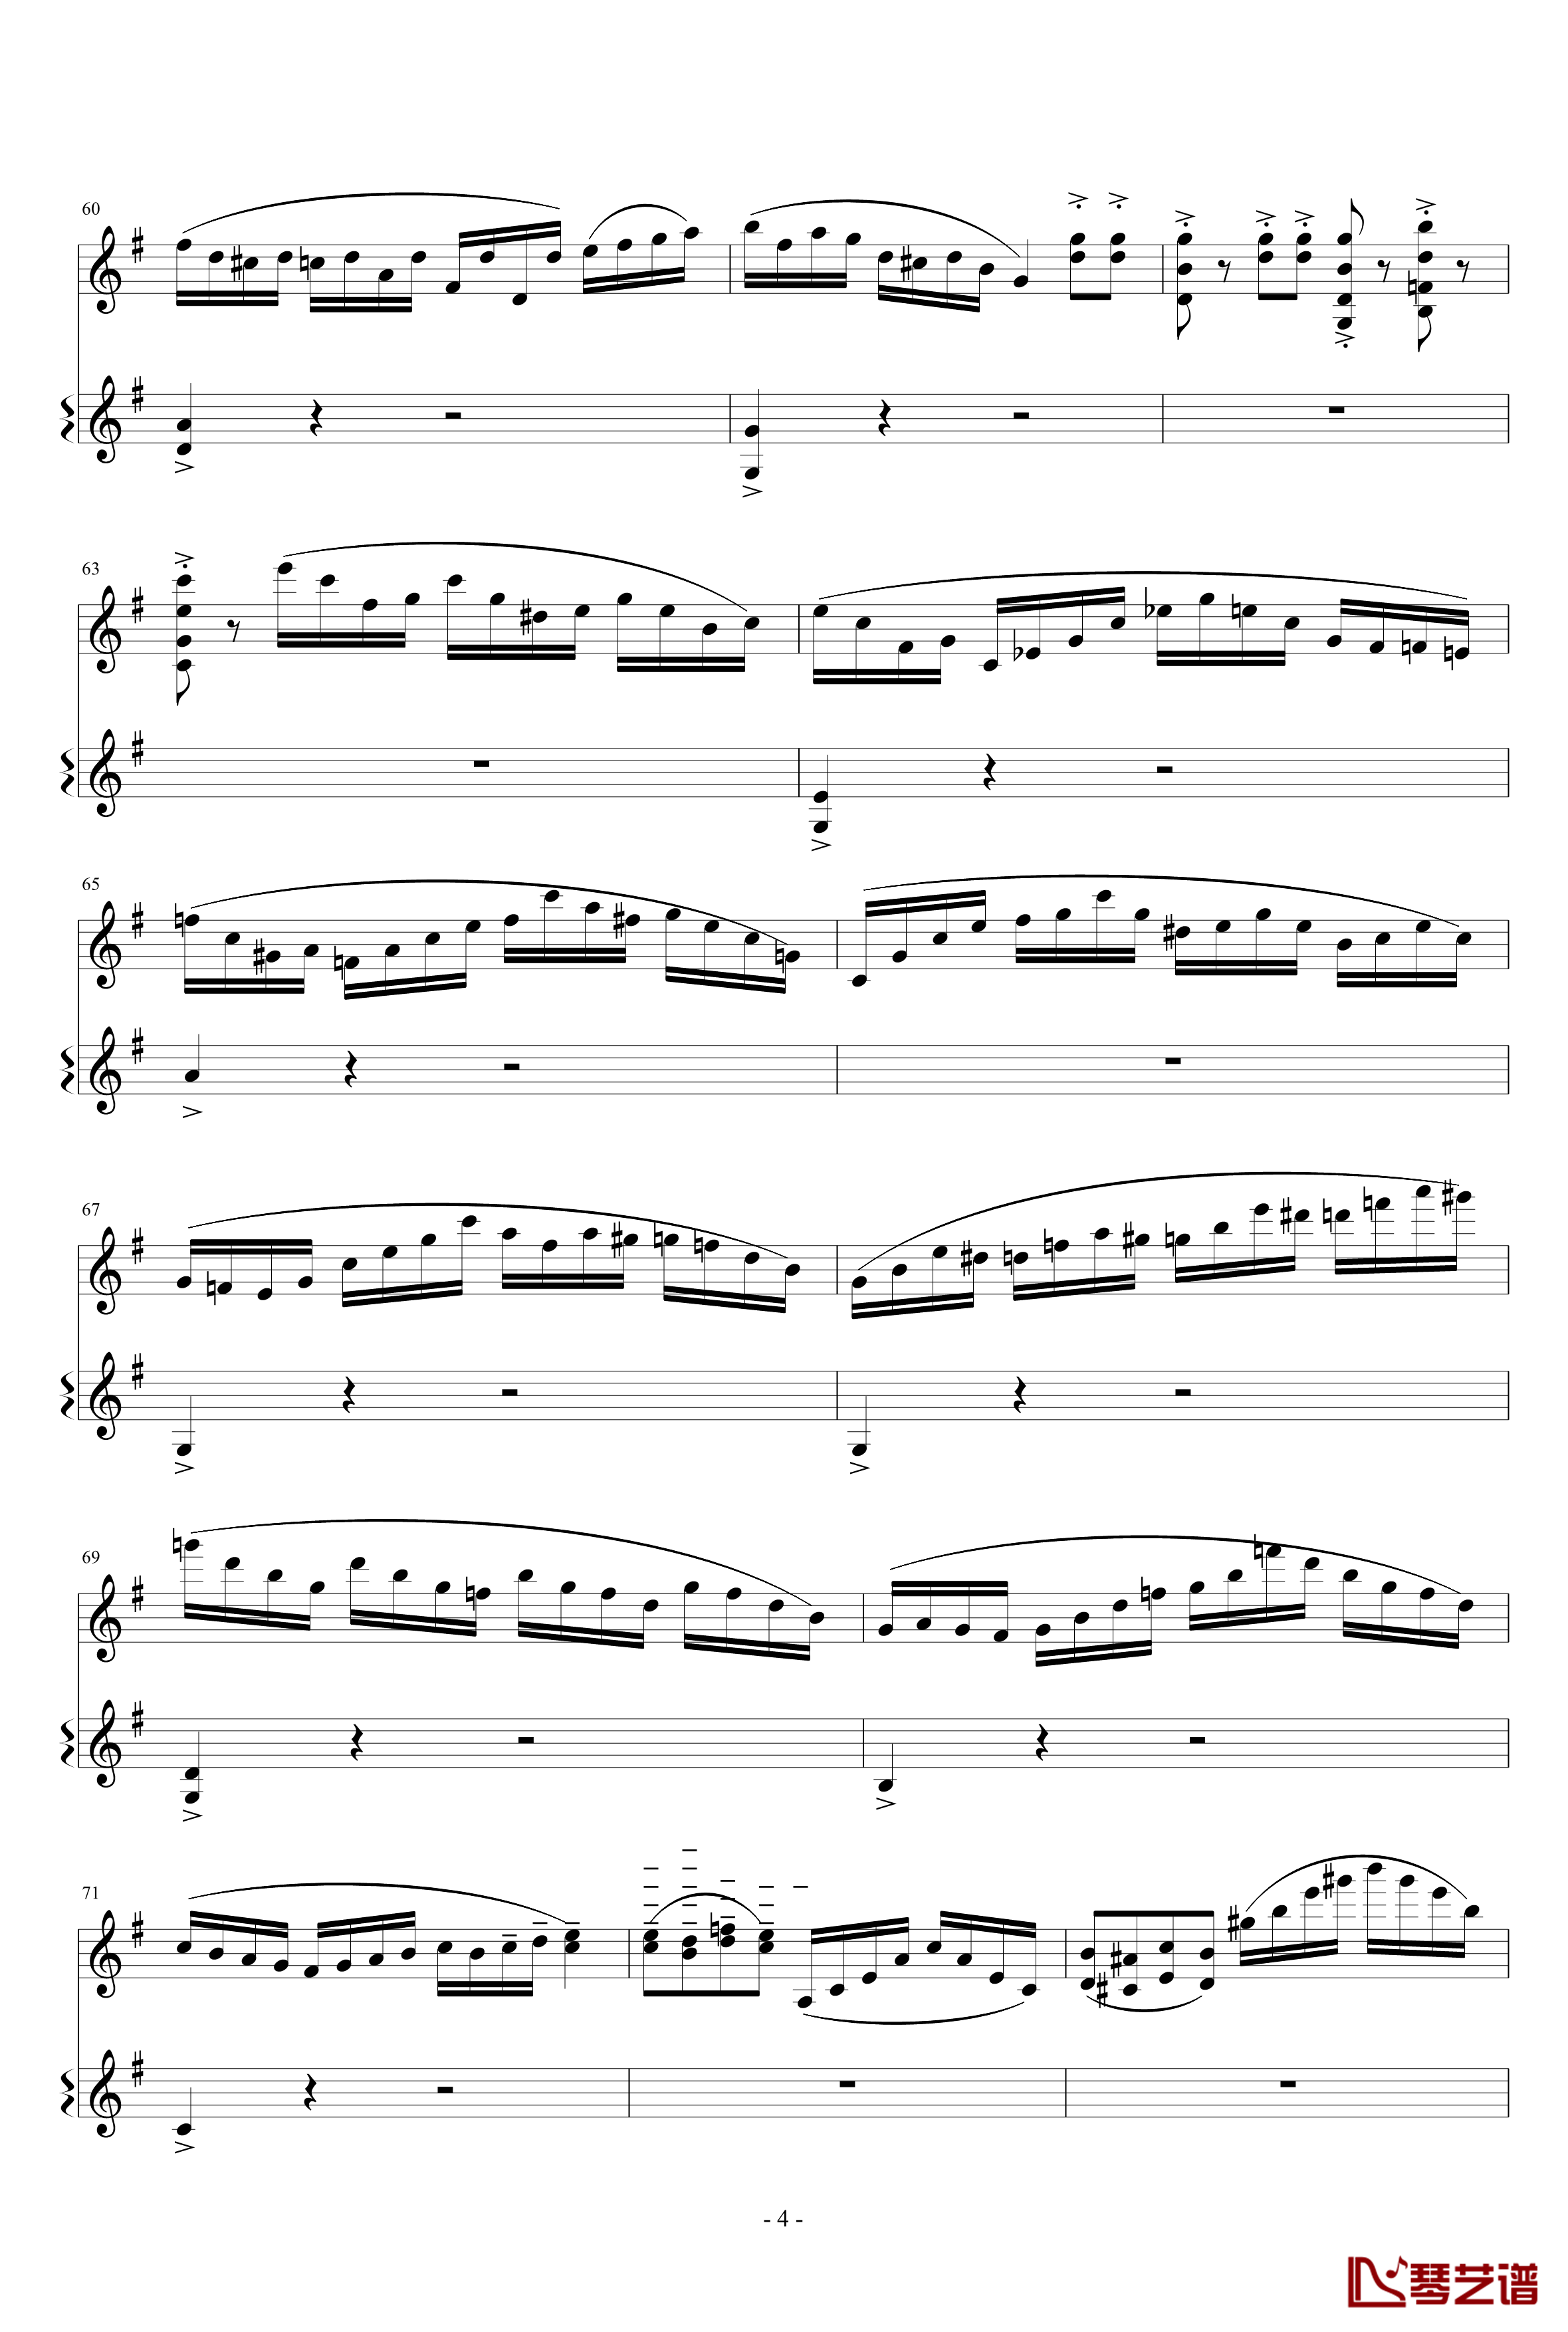 意大利国歌变奏曲钢琴谱-只修改了一个音-DXF4